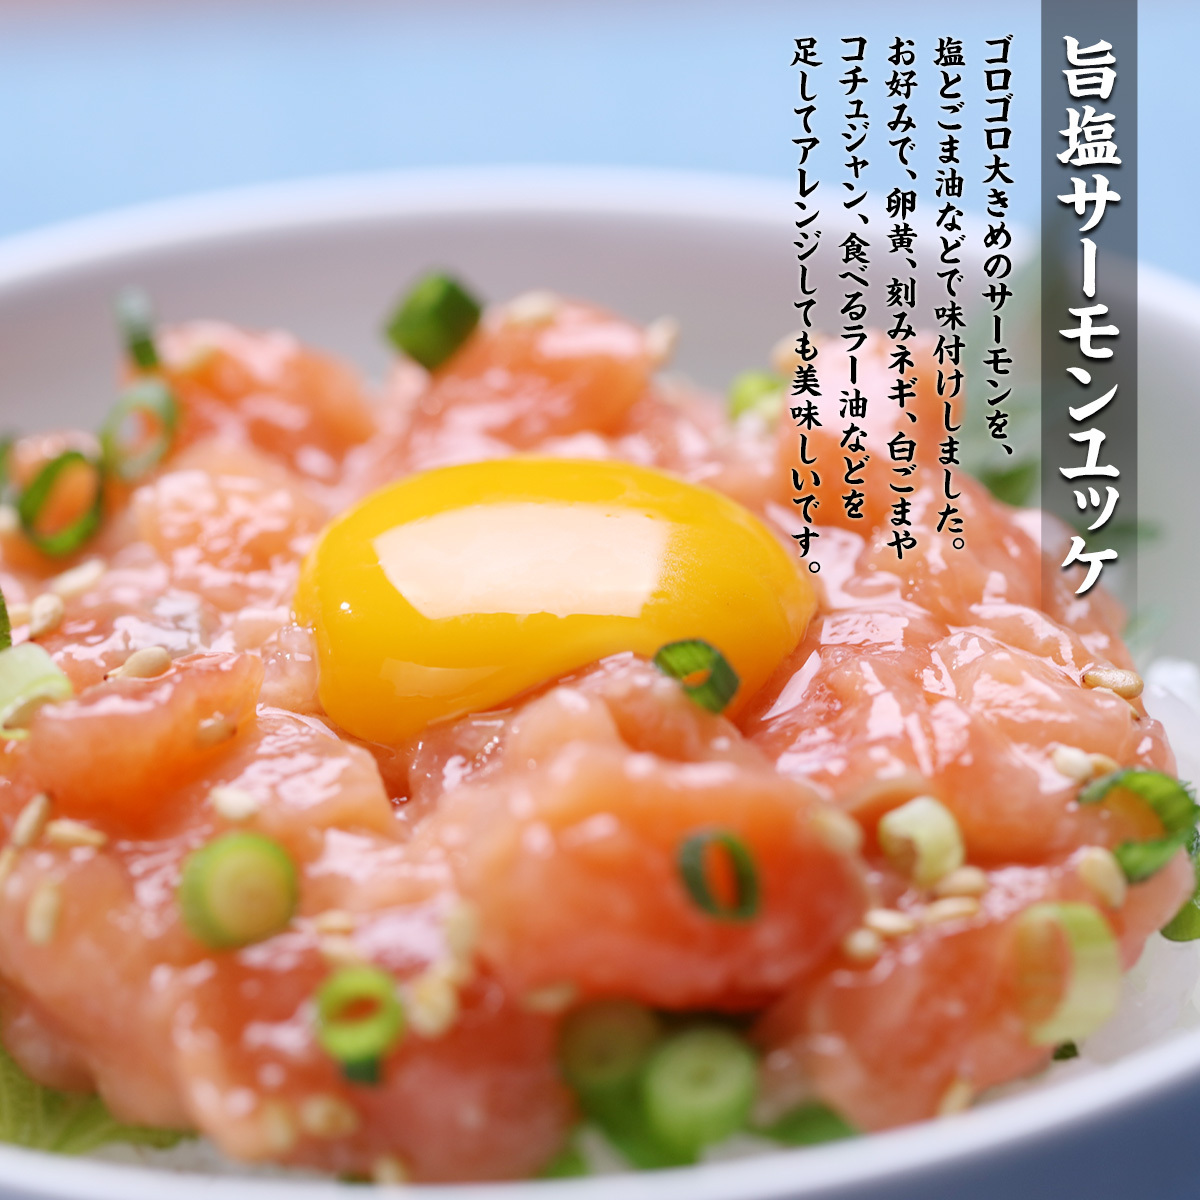  три вид. salmon морепродукты фарфоровая пиала комплект (3 вид × каждый 2 еда ) salmon ... salmon yuke.. час короткий 5 минут 